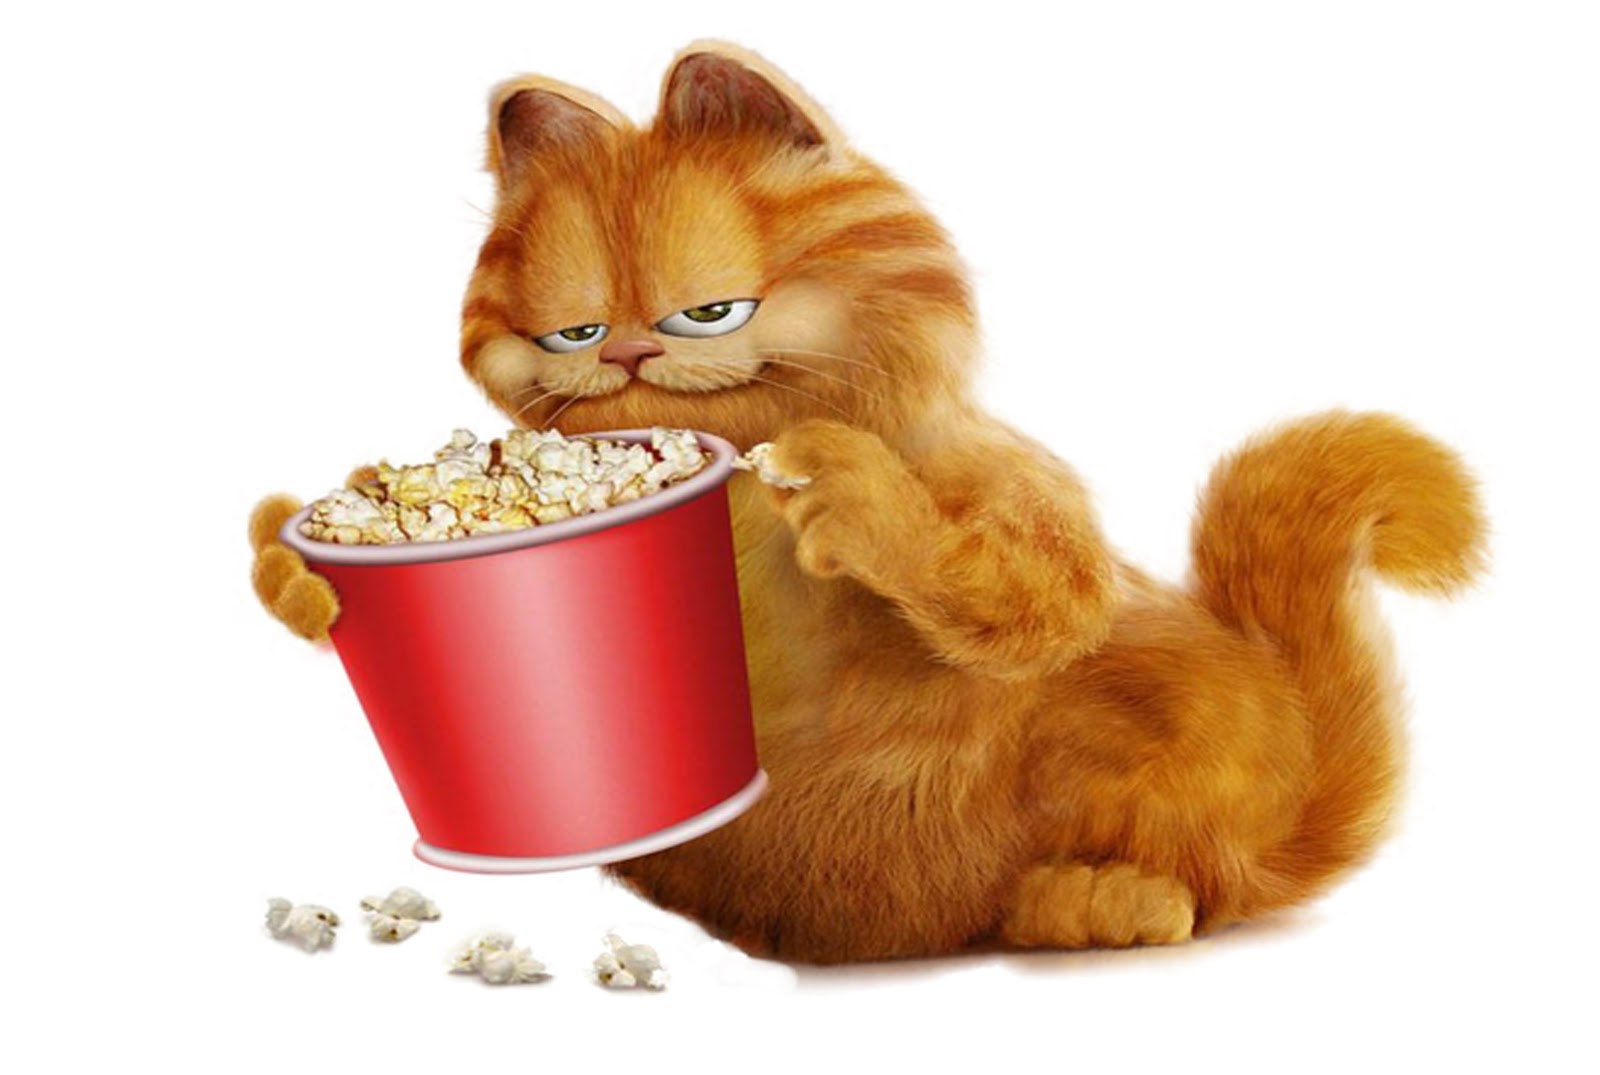 Wallpaper Lucu Gambar Kucing Garfield Terbaru 2016 Kata Kata